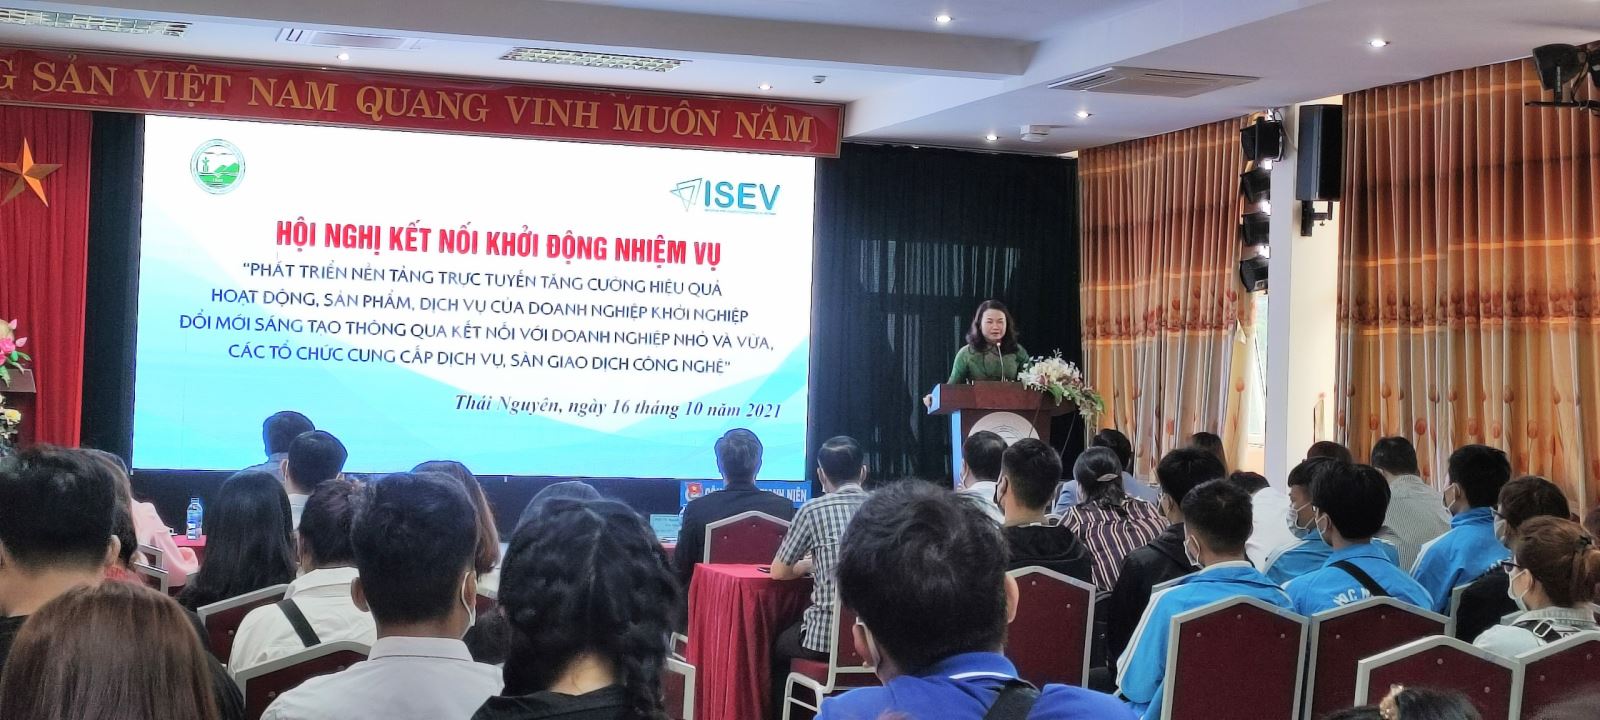 Hội nghị khởi động dự án 844 tại trường Đại học Nông Lâm Thái Nguyên